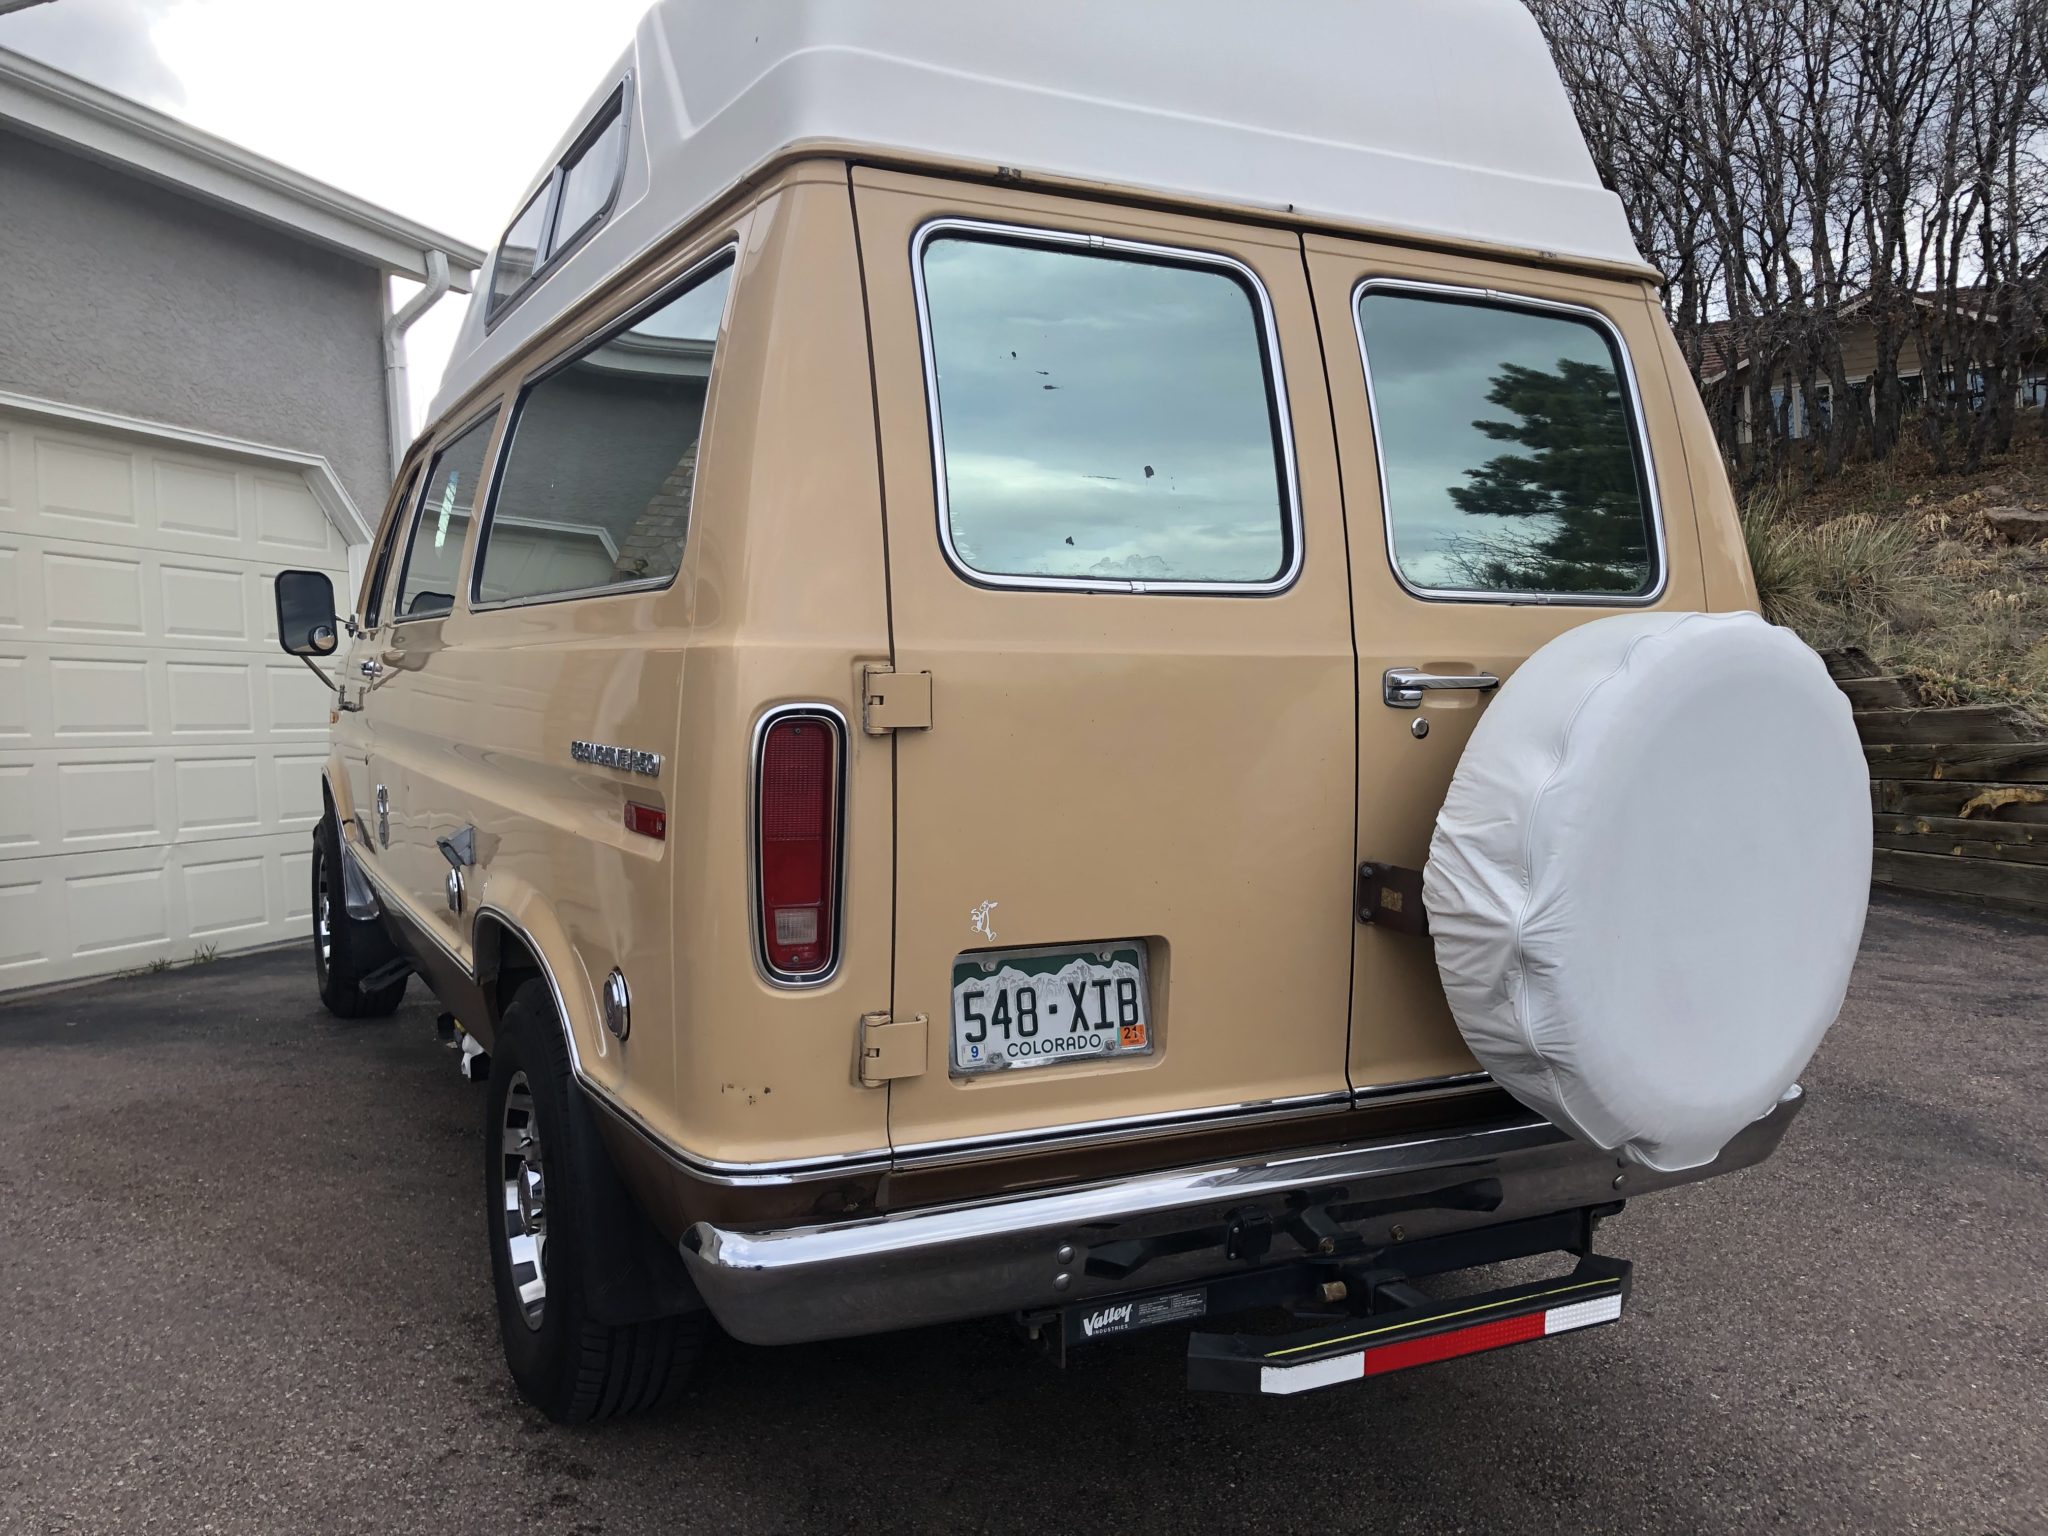 1976 Ford E-Series Camper Van For Sale in Colorado Springs, Colorado